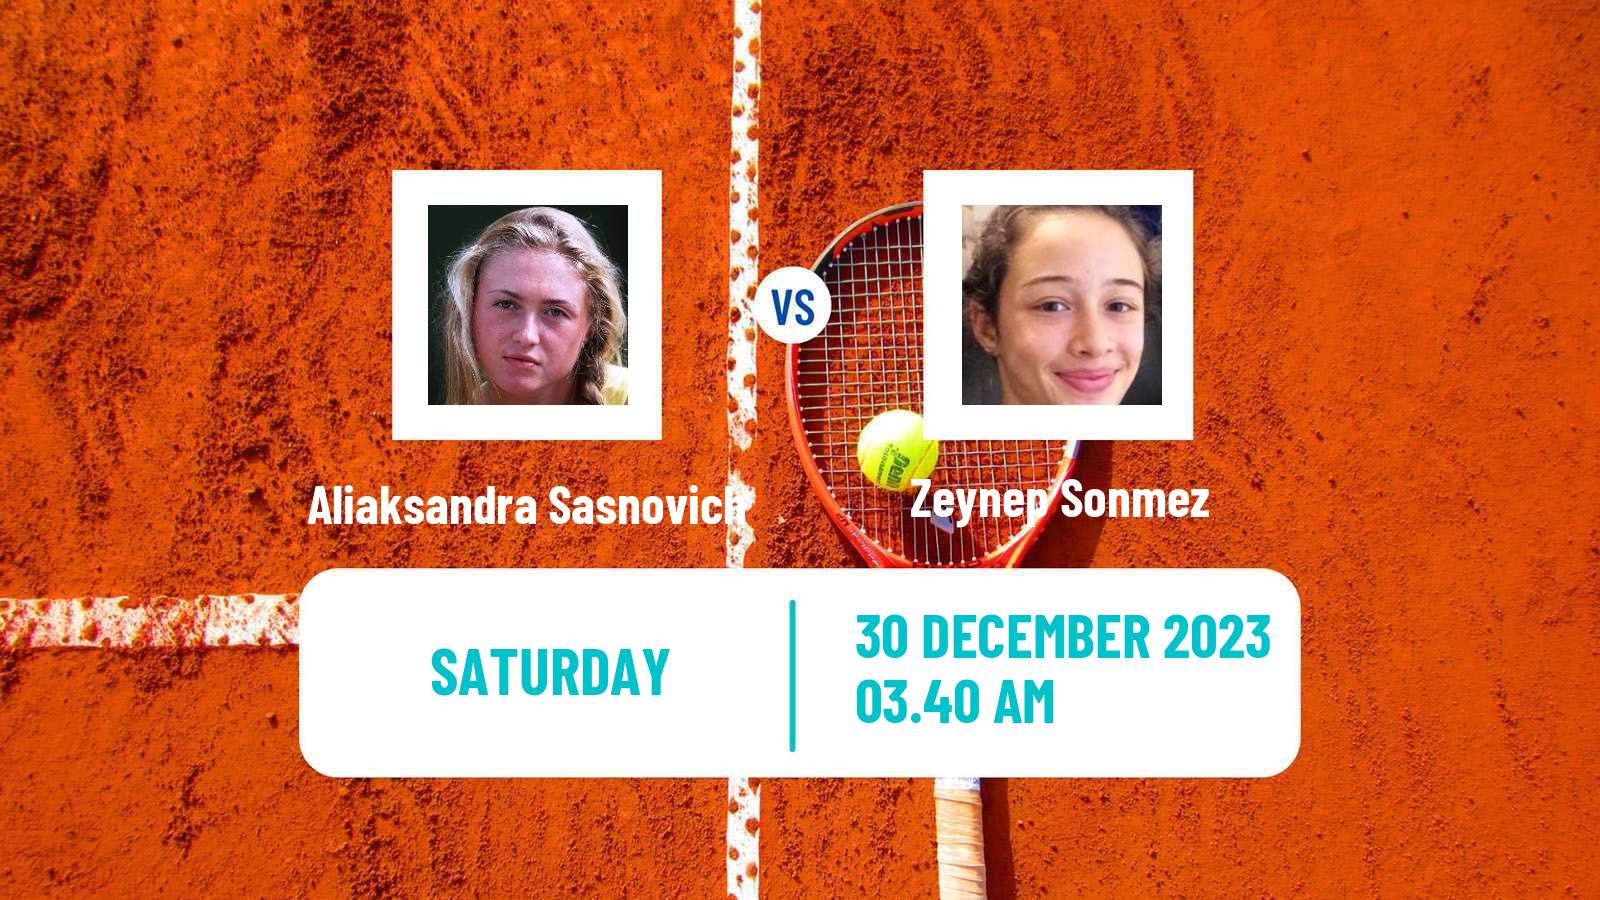 Tennis WTA Brisbane Aliaksandra Sasnovich - Zeynep Sonmez